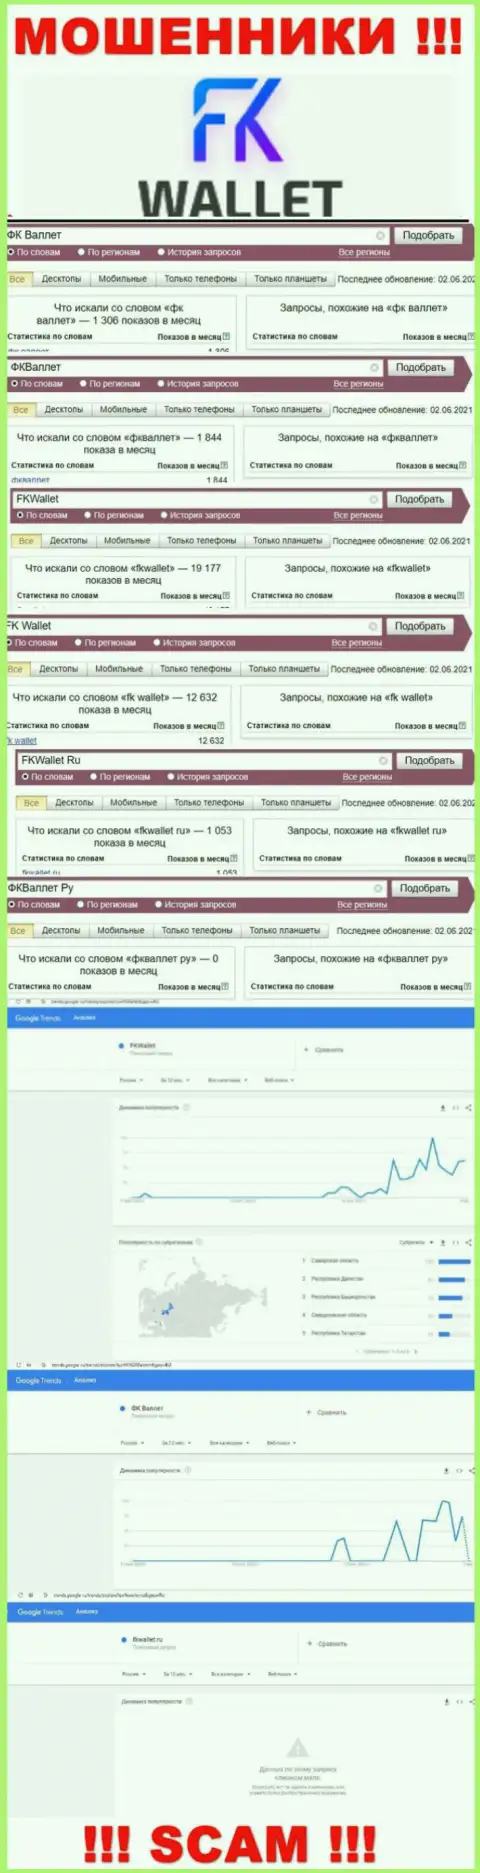 Скриншот статистических сведений поисковых запросов по мошеннической организации ФК Валлет